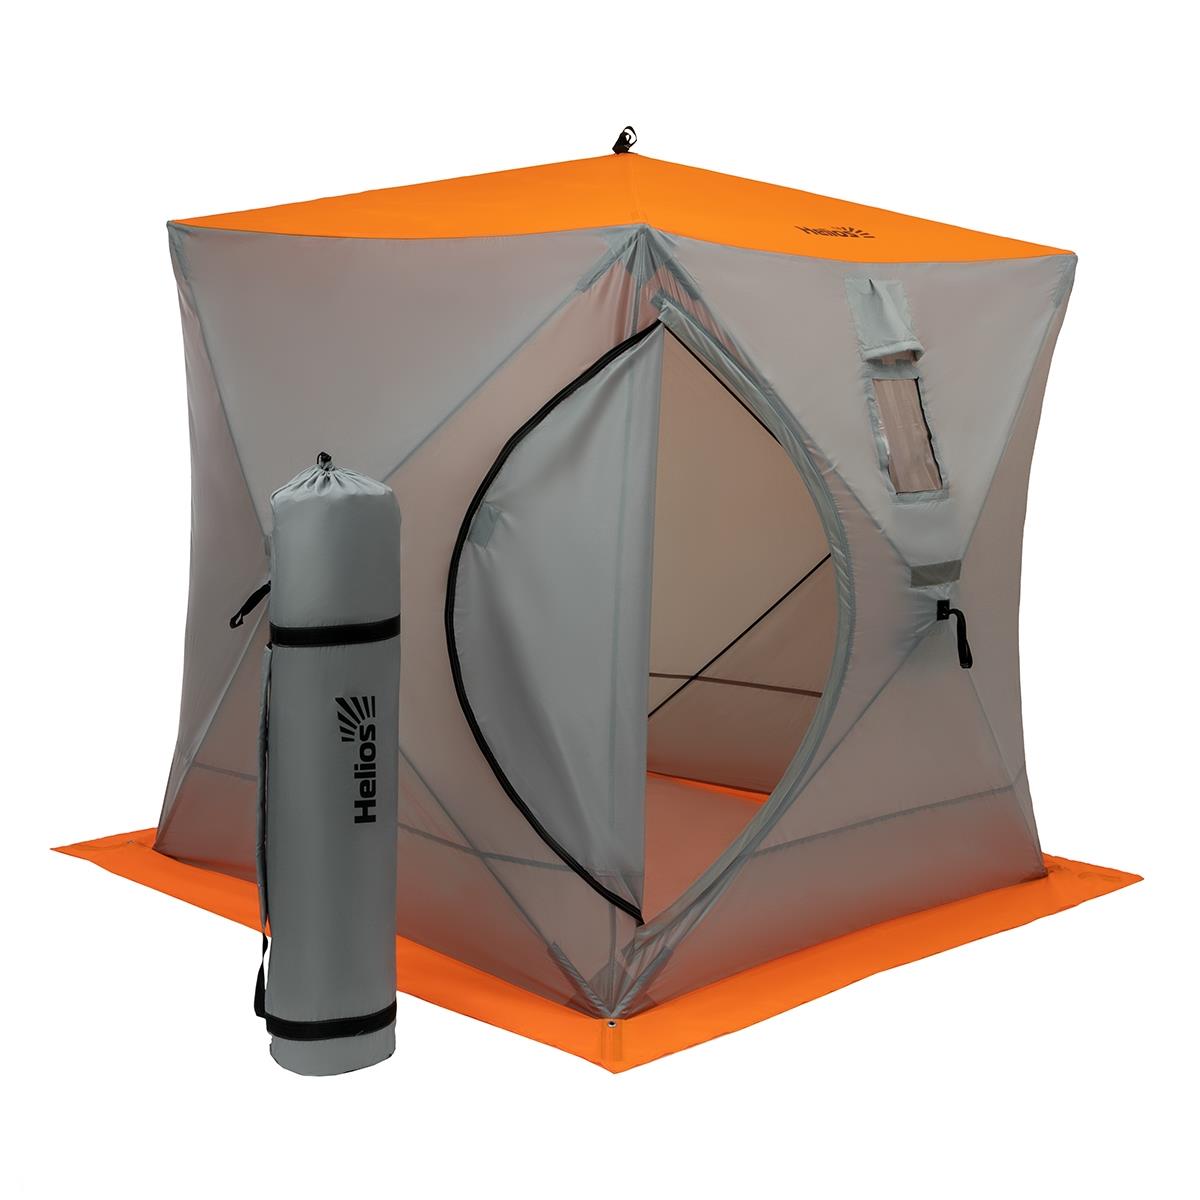 печь для зимней палатки универсальная пу 500m t hs pu500m helios Палатка куб 1,8х1,8 (4серый/1оранжевый) для зимней рыбалки Helios